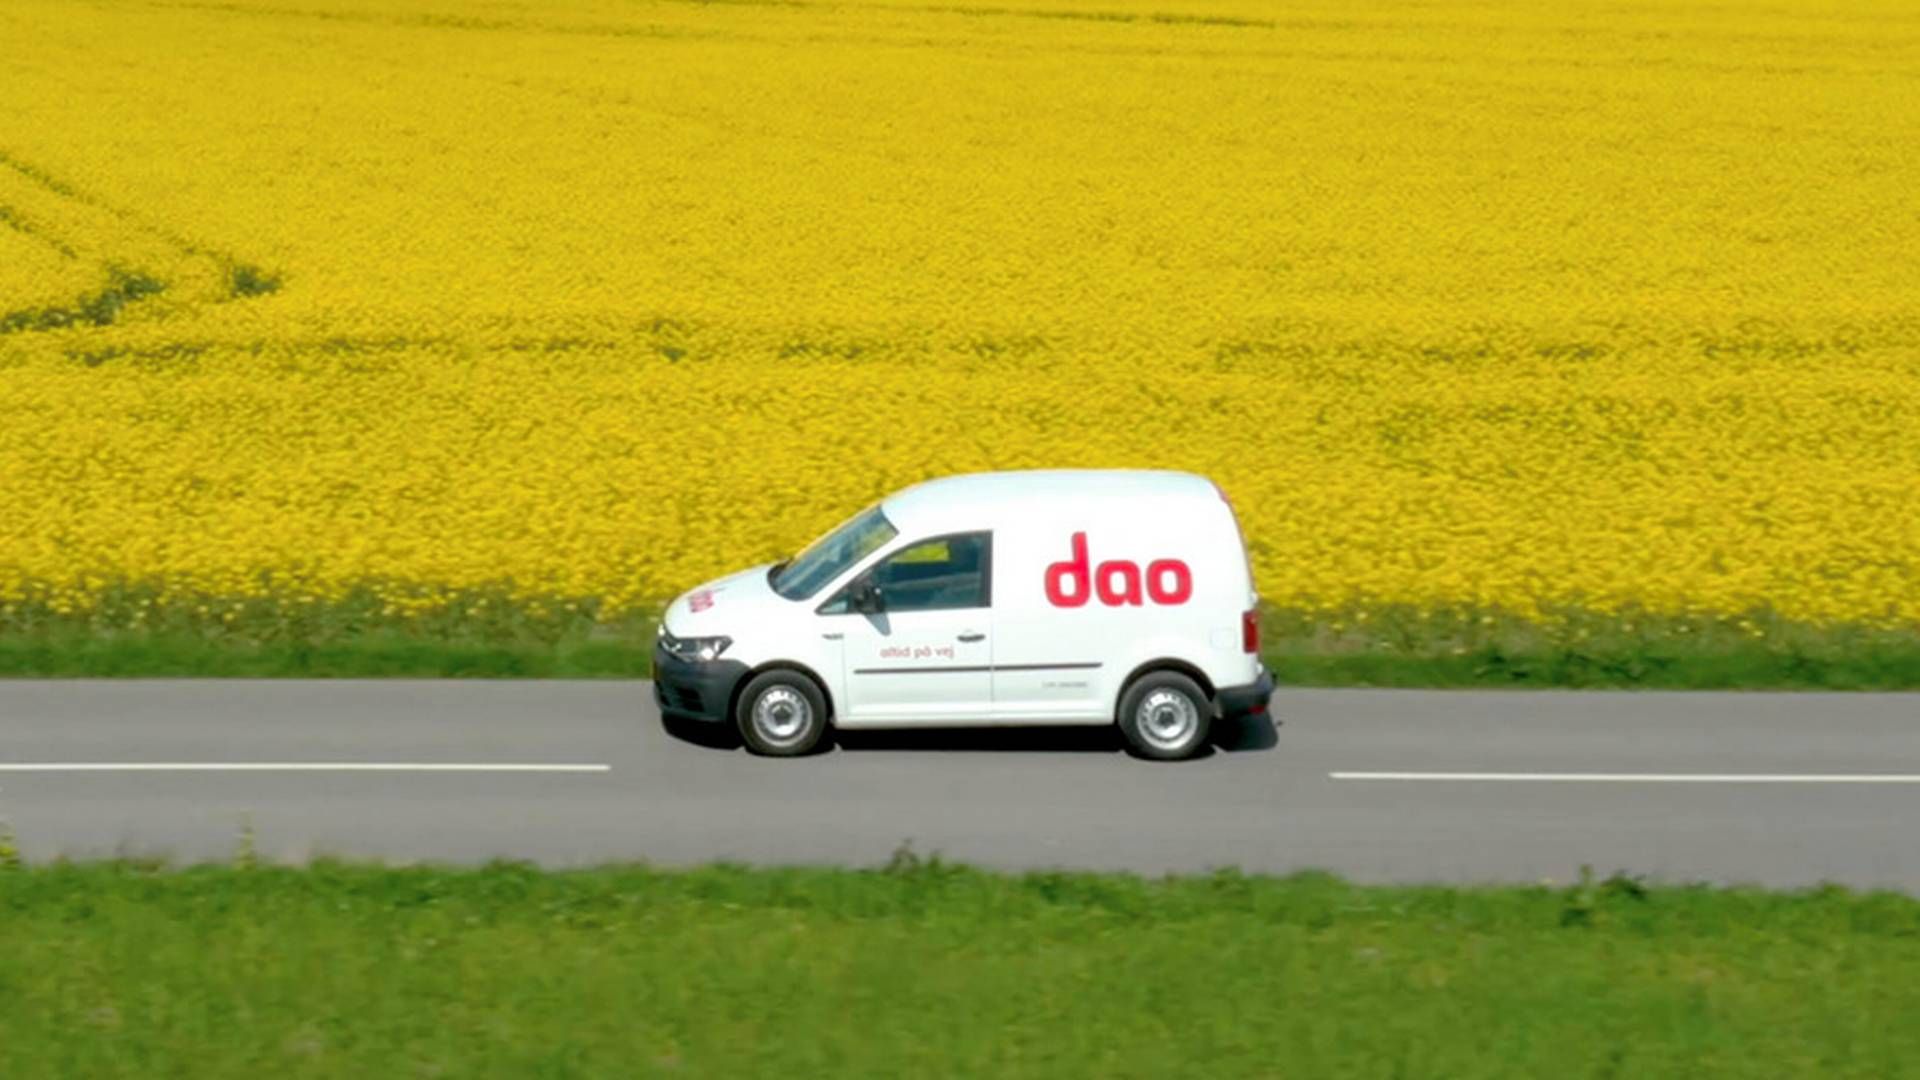 Distribututionsselskabet Dao venter fremgang på toplinjen i 2023. | Foto: Pr / Dao